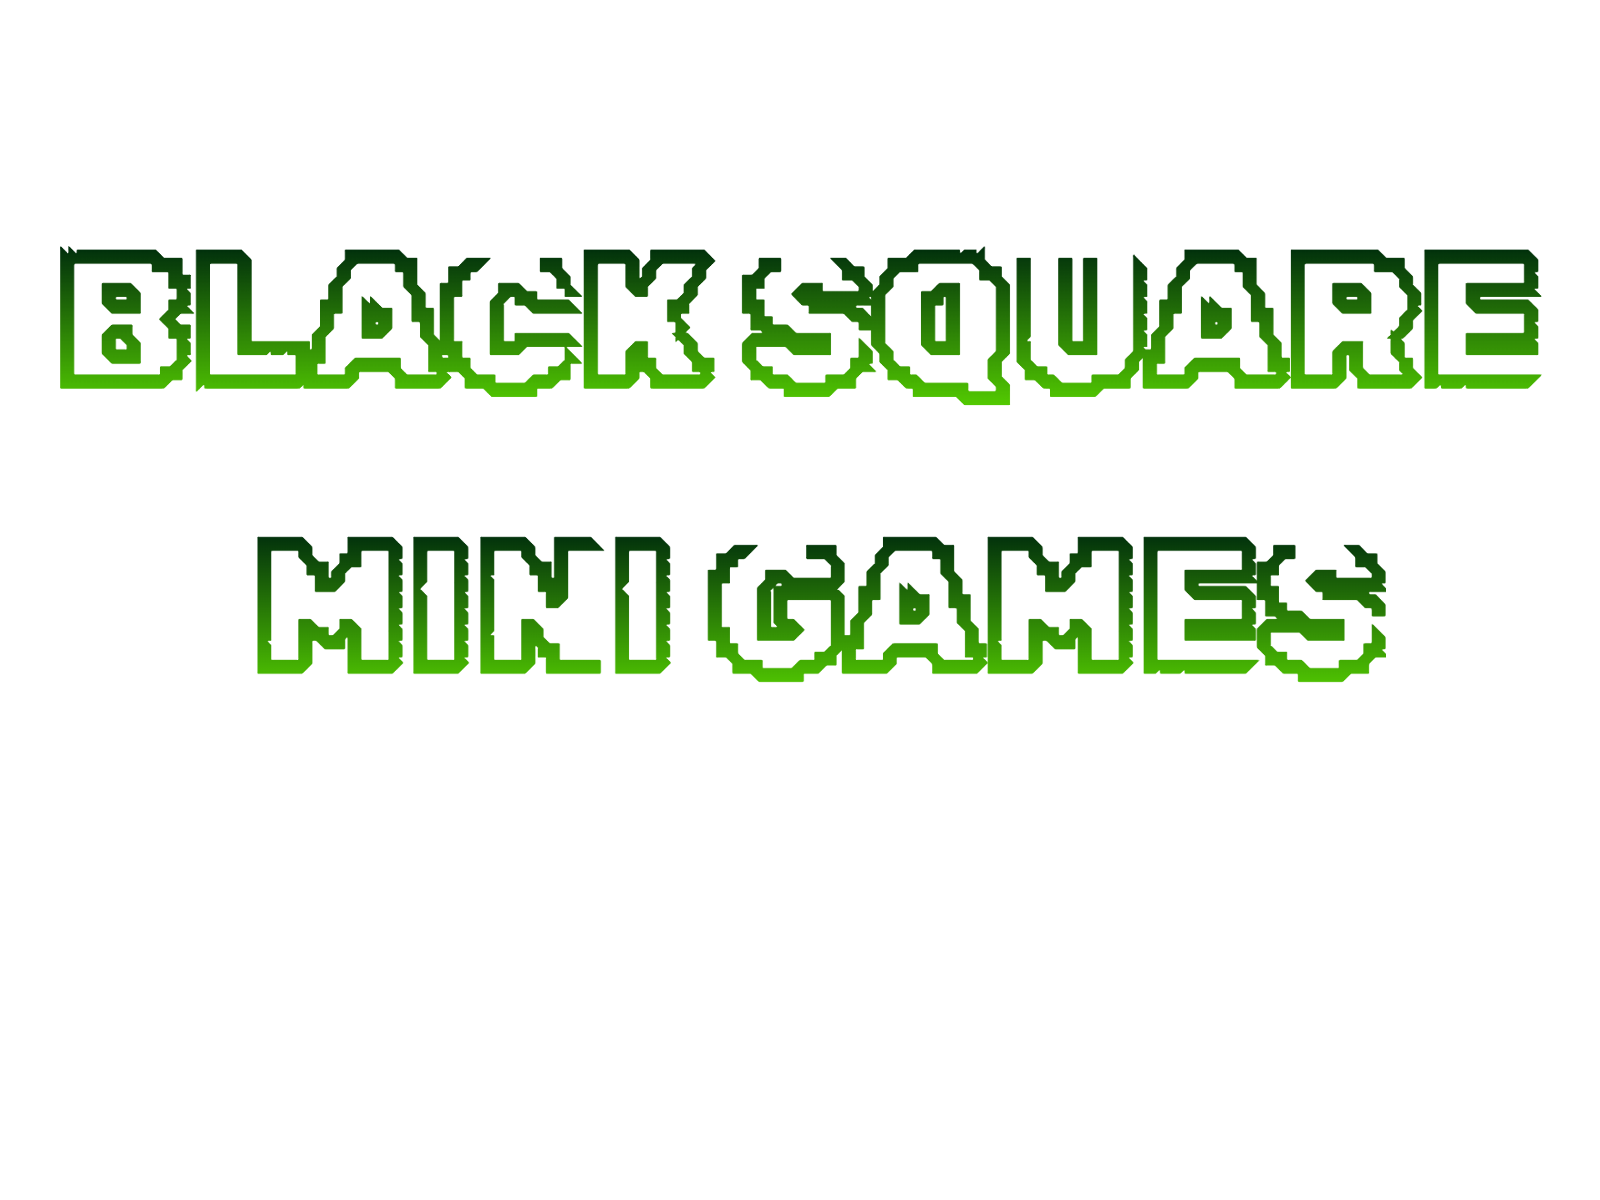 Black Square Mini Games